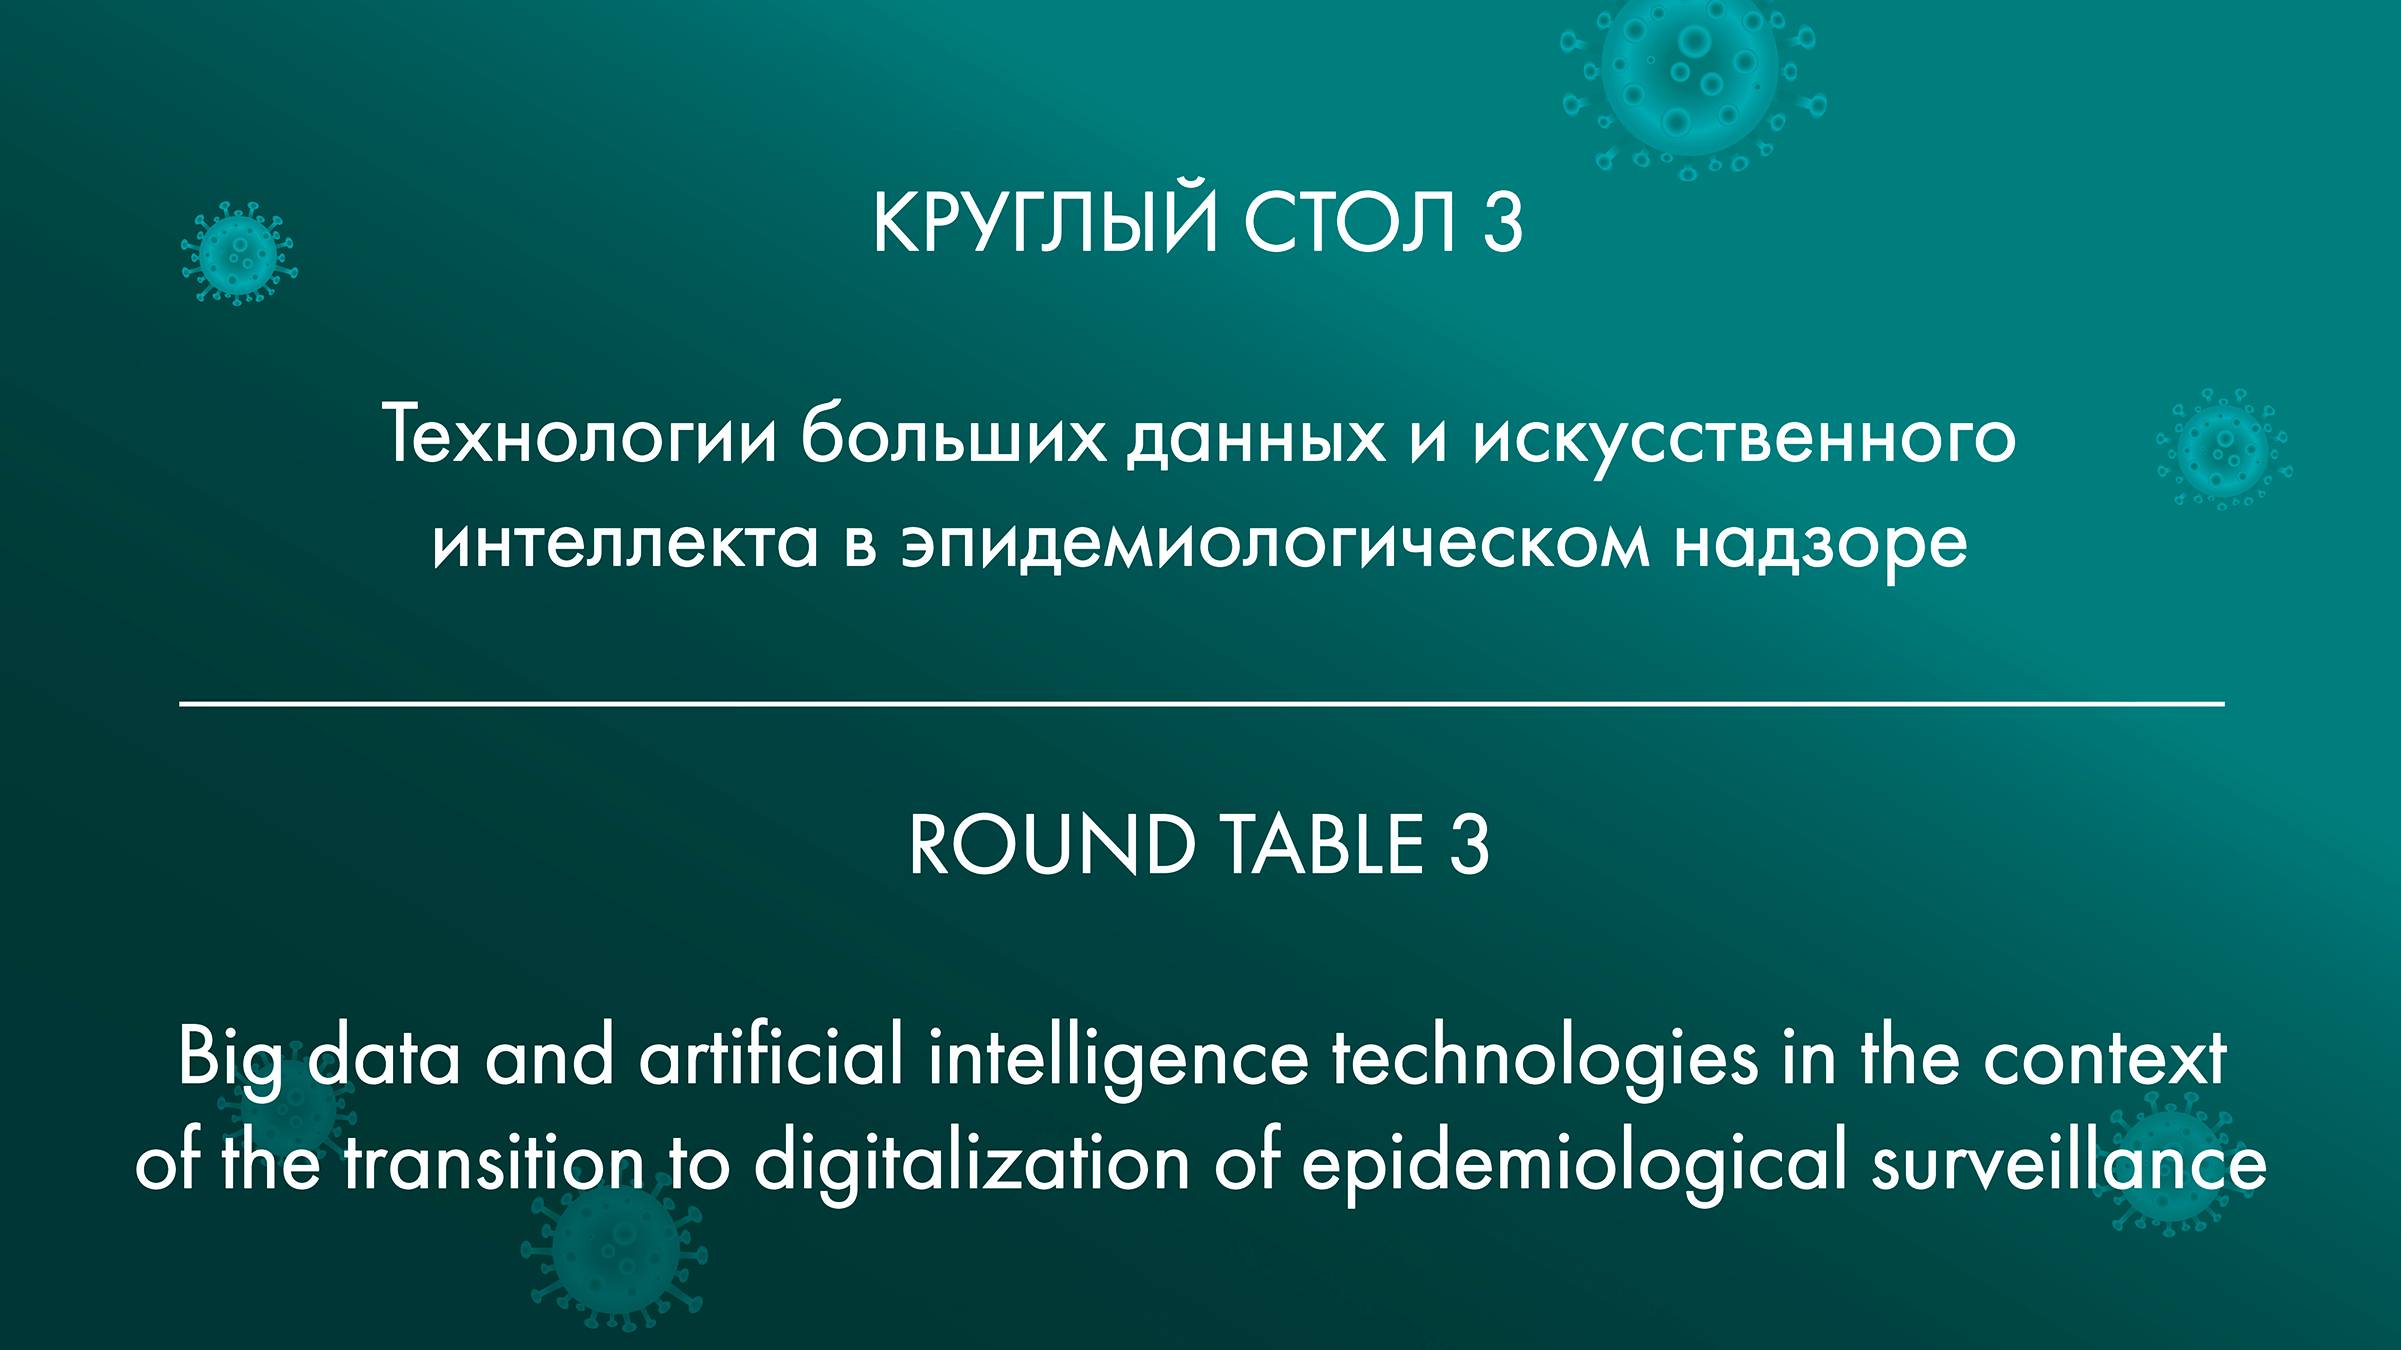 КРУГЛЫЙ СТОЛ 3 Технологии больших данных и искусственного интеллекта в эпидемиологическом надзоре